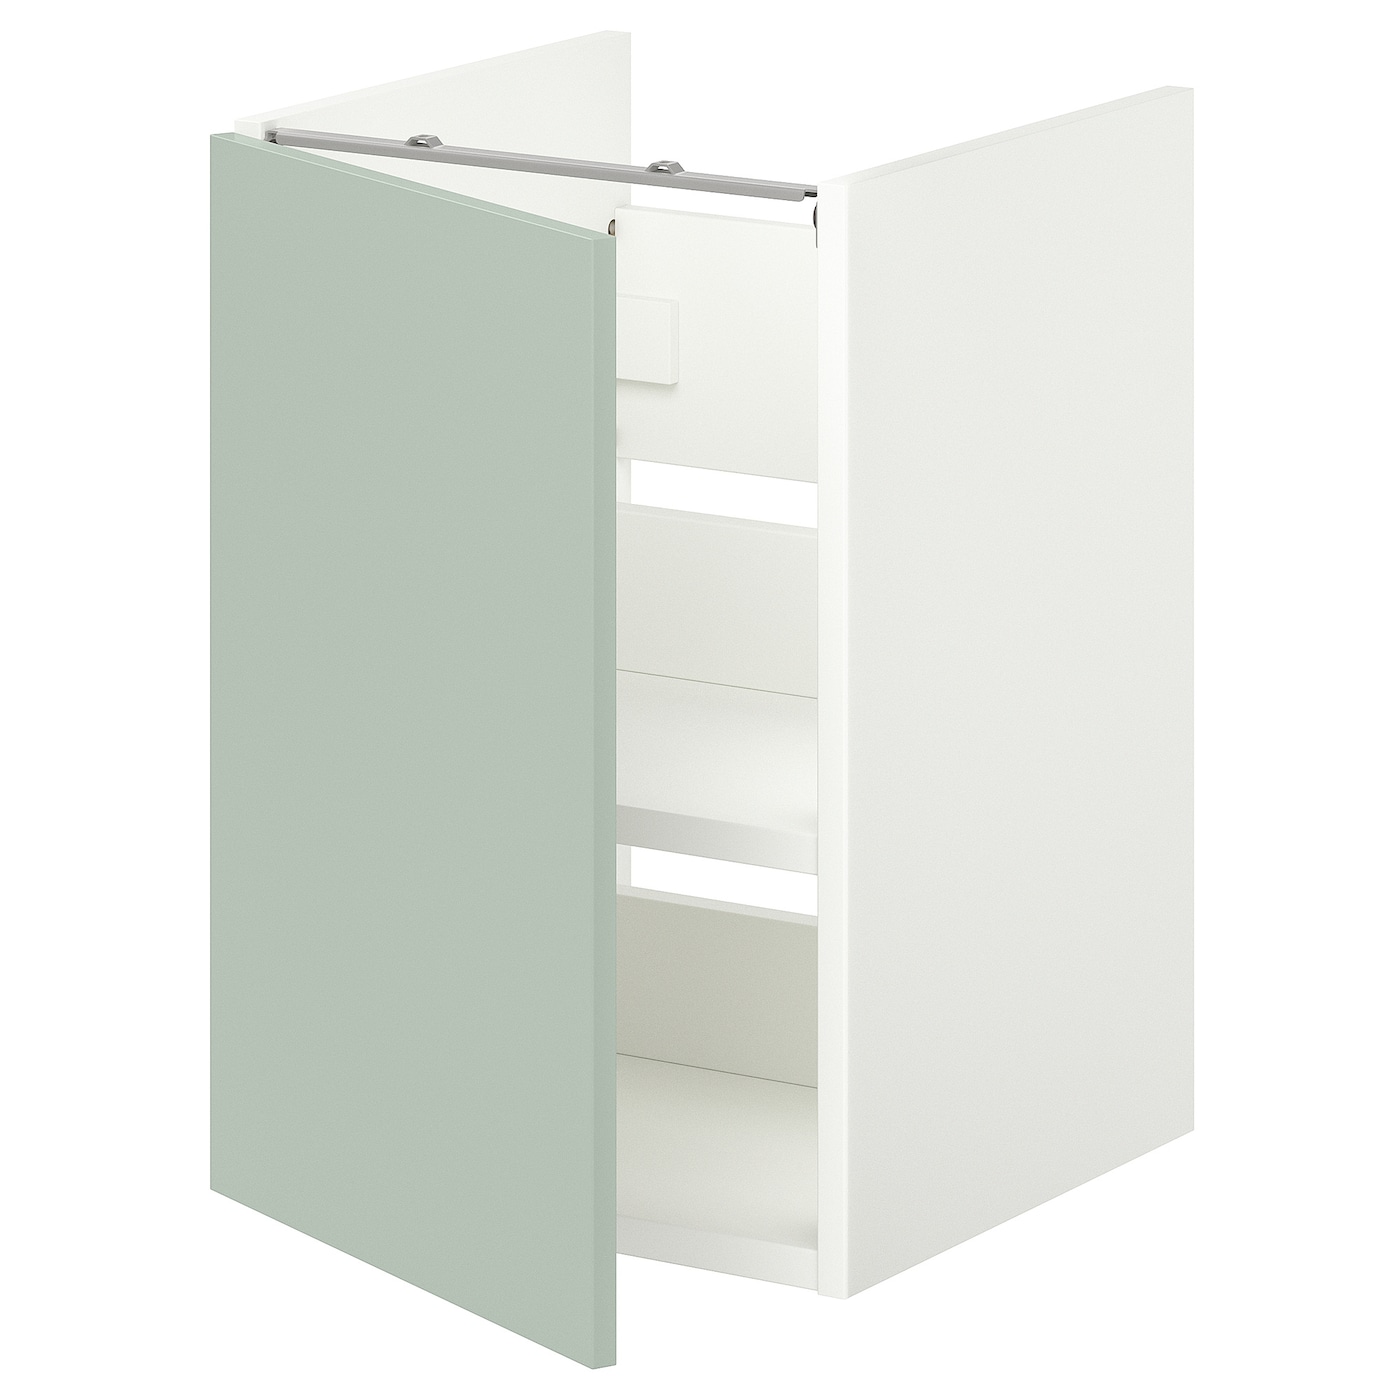 Умывальник с половинкой/дверью - ENHET IKEA/ЭНХЕТ ИКЕА, 60х40 см, белый/зеленый